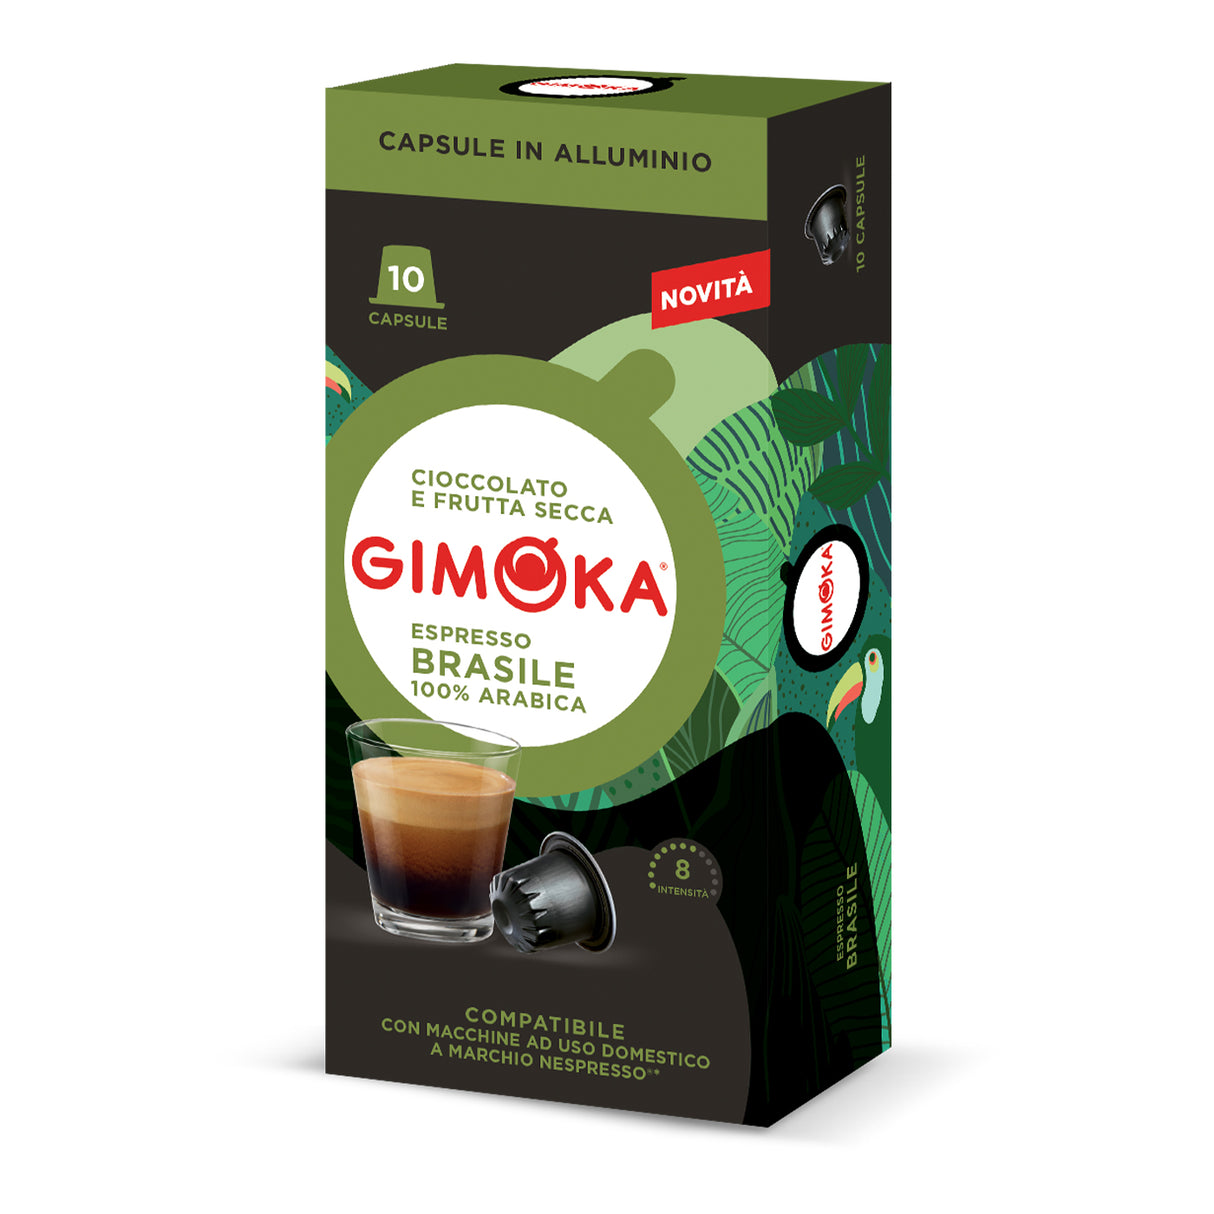 Gimoka Espresso Brasil Coffee Pods